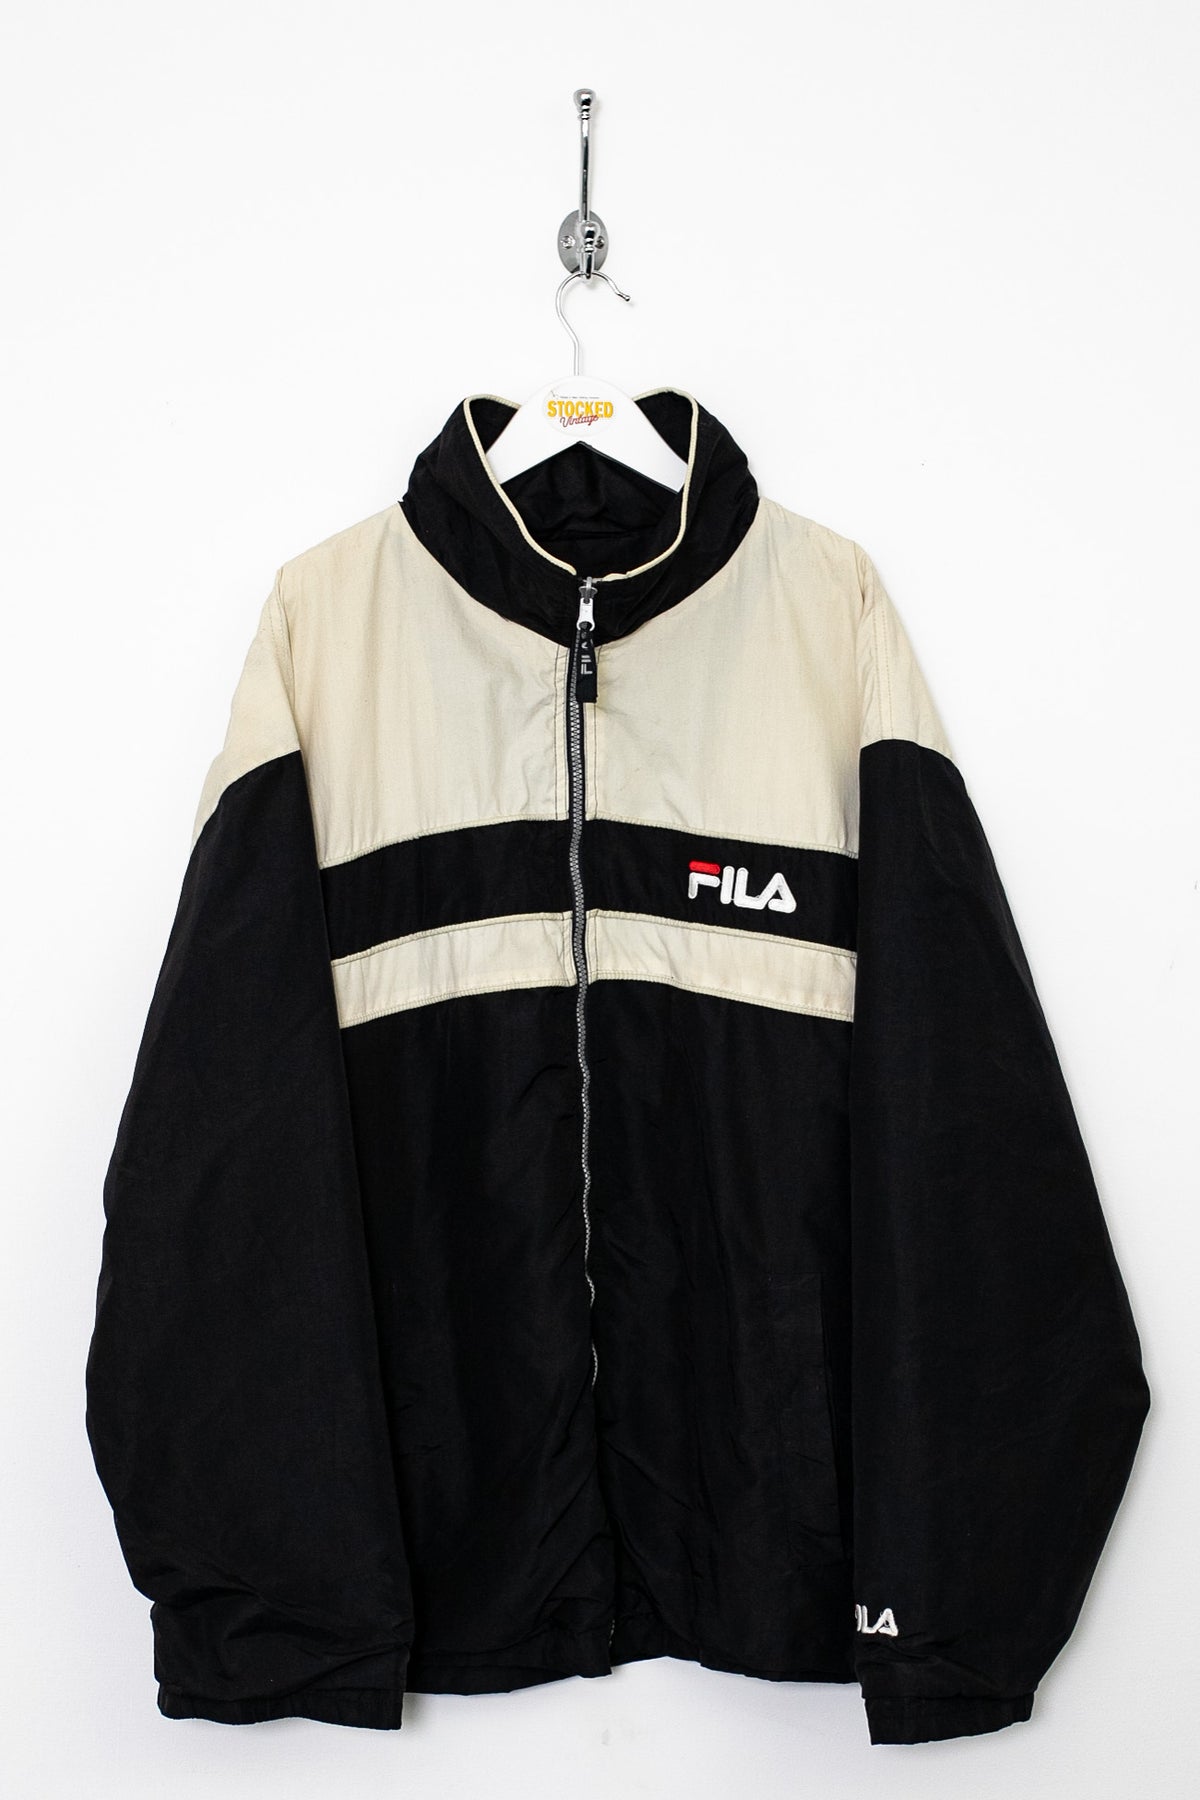 Fila Jacket (XL)